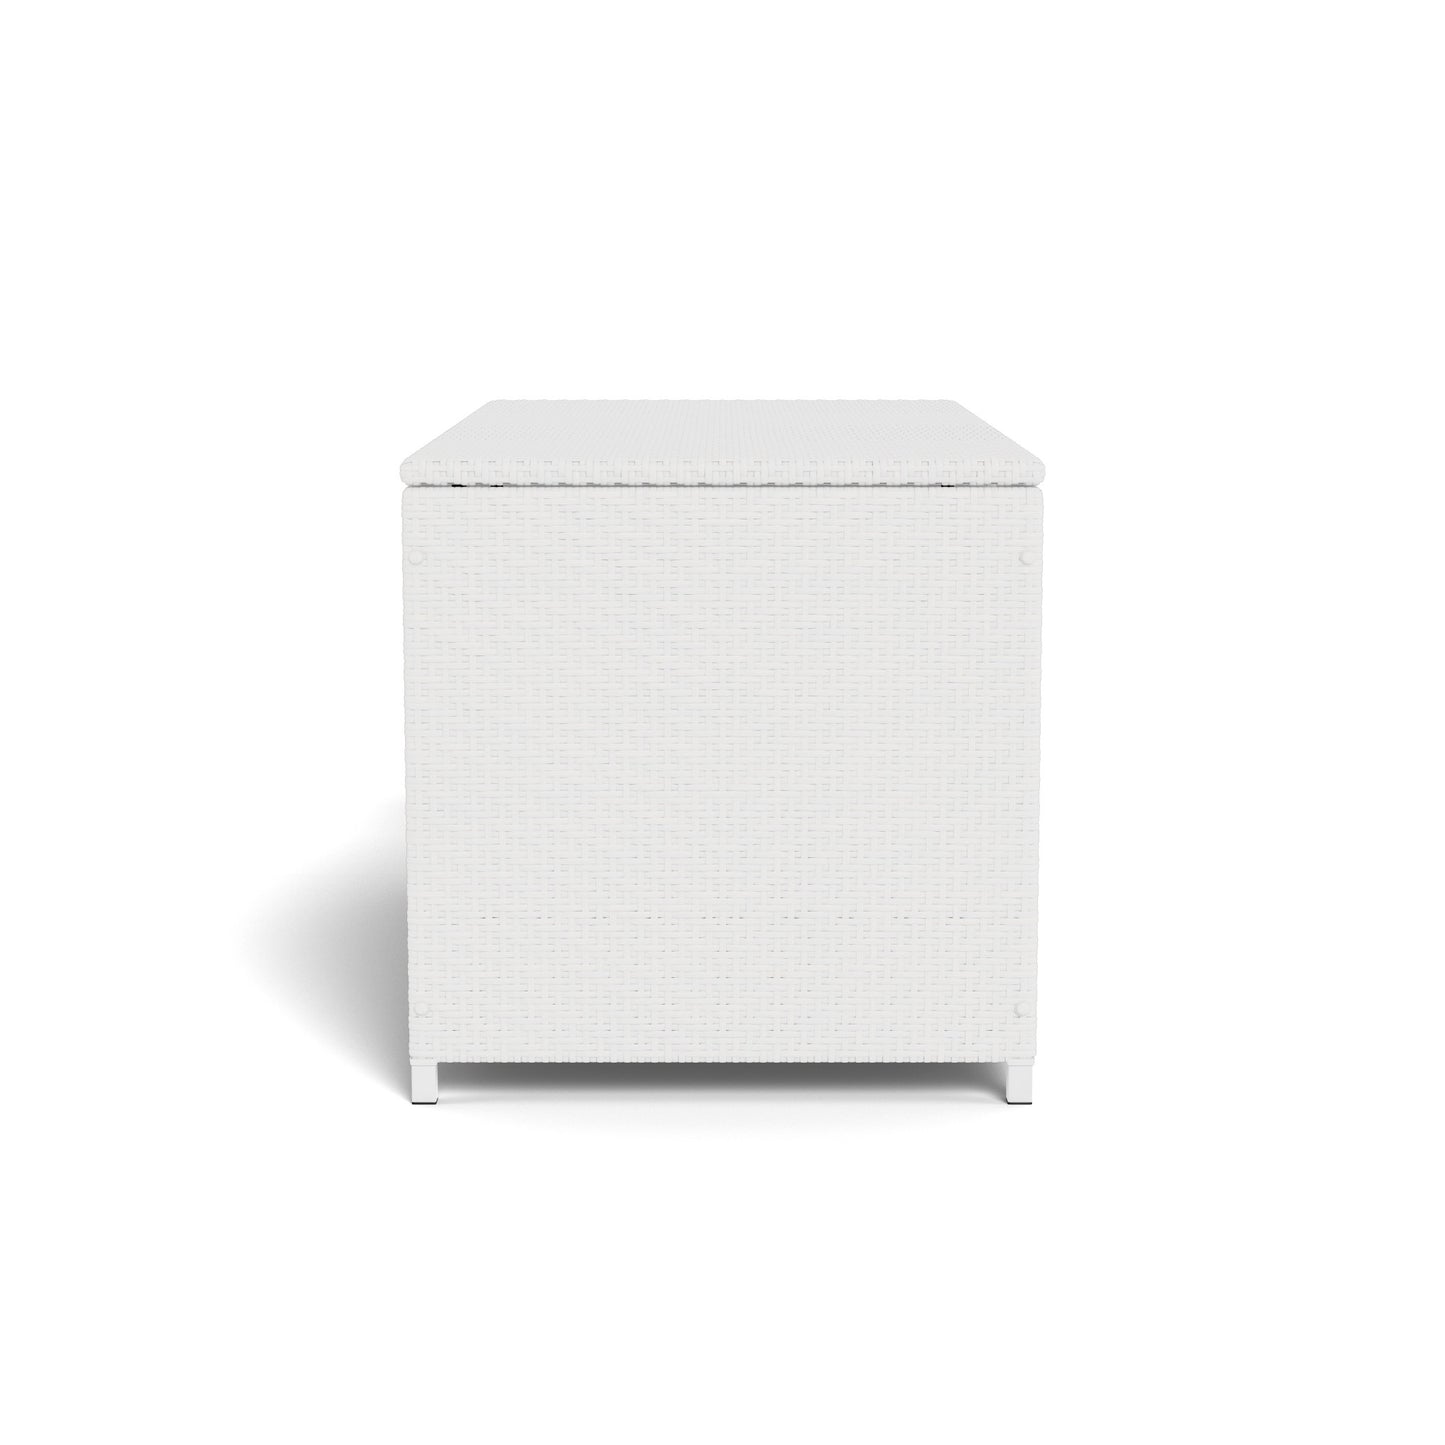 Large Outdoor Wicker Storage Deck Box - White